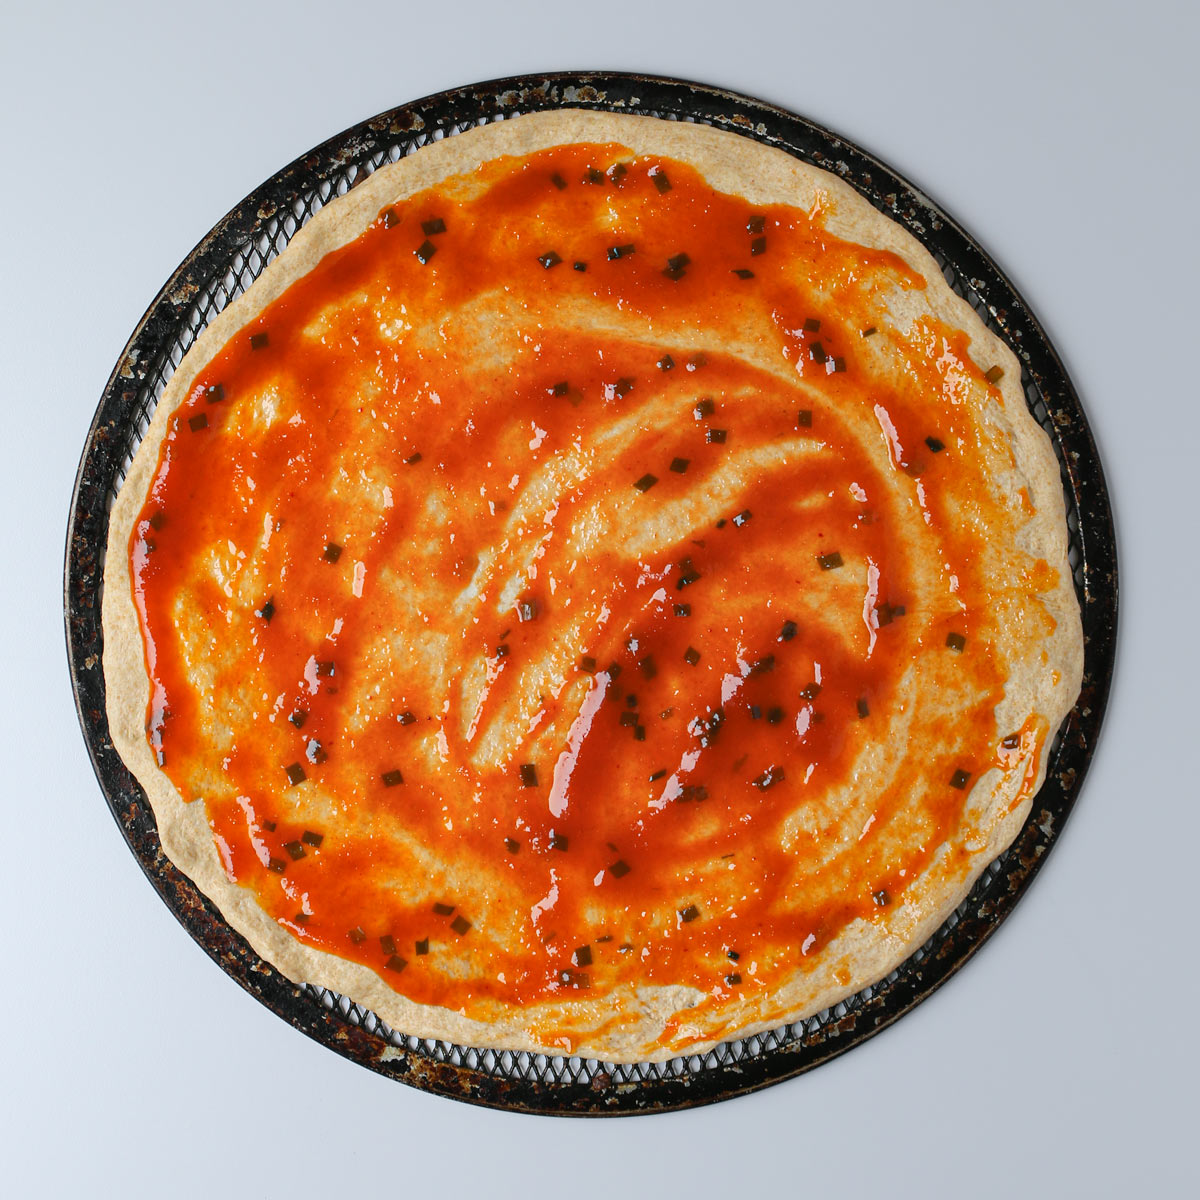 sauce spread on pizza crust.